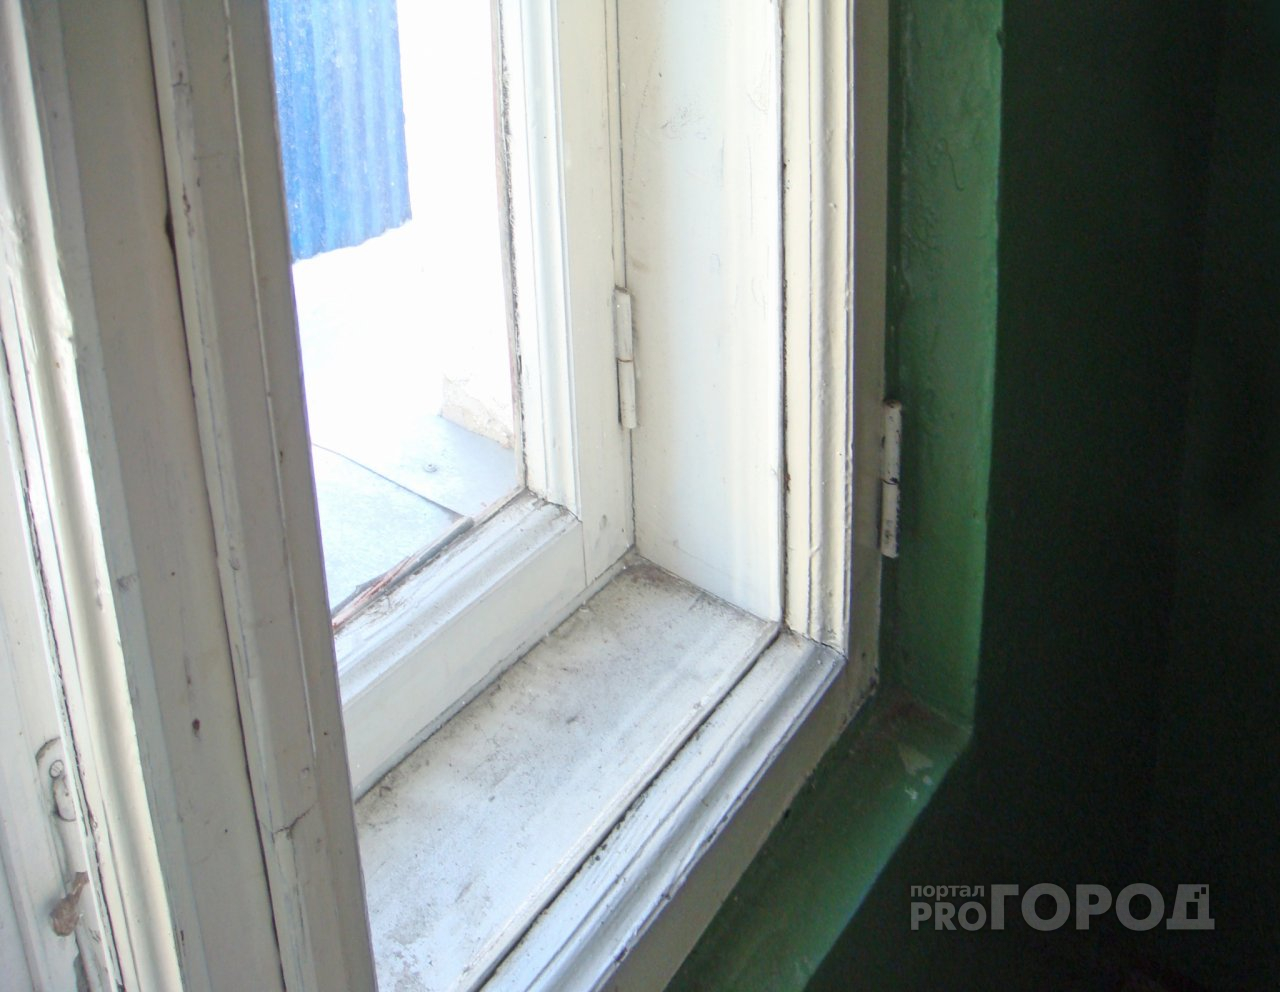 В Йошкар-Оле девочка выпала из окна инфекционной больницы